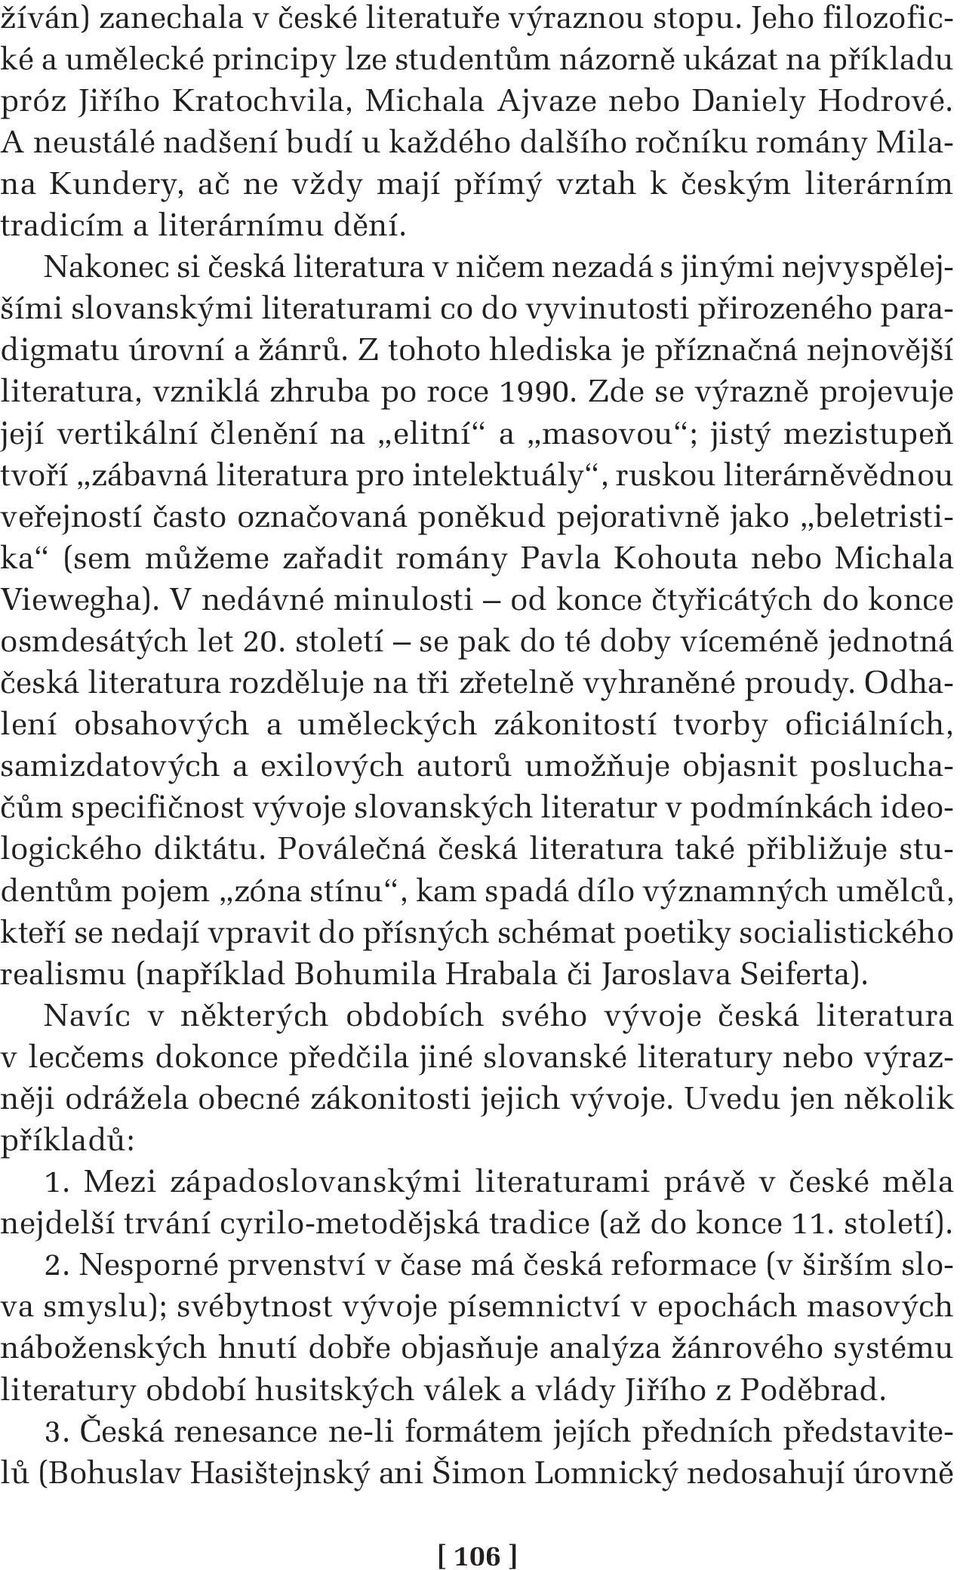 Nakonec si česká literatura v ničem nezadá s jinými nejvyspělejšími slovanskými literaturami co do vyvinutosti přirozeného paradigmatu úrovní a žánrů.